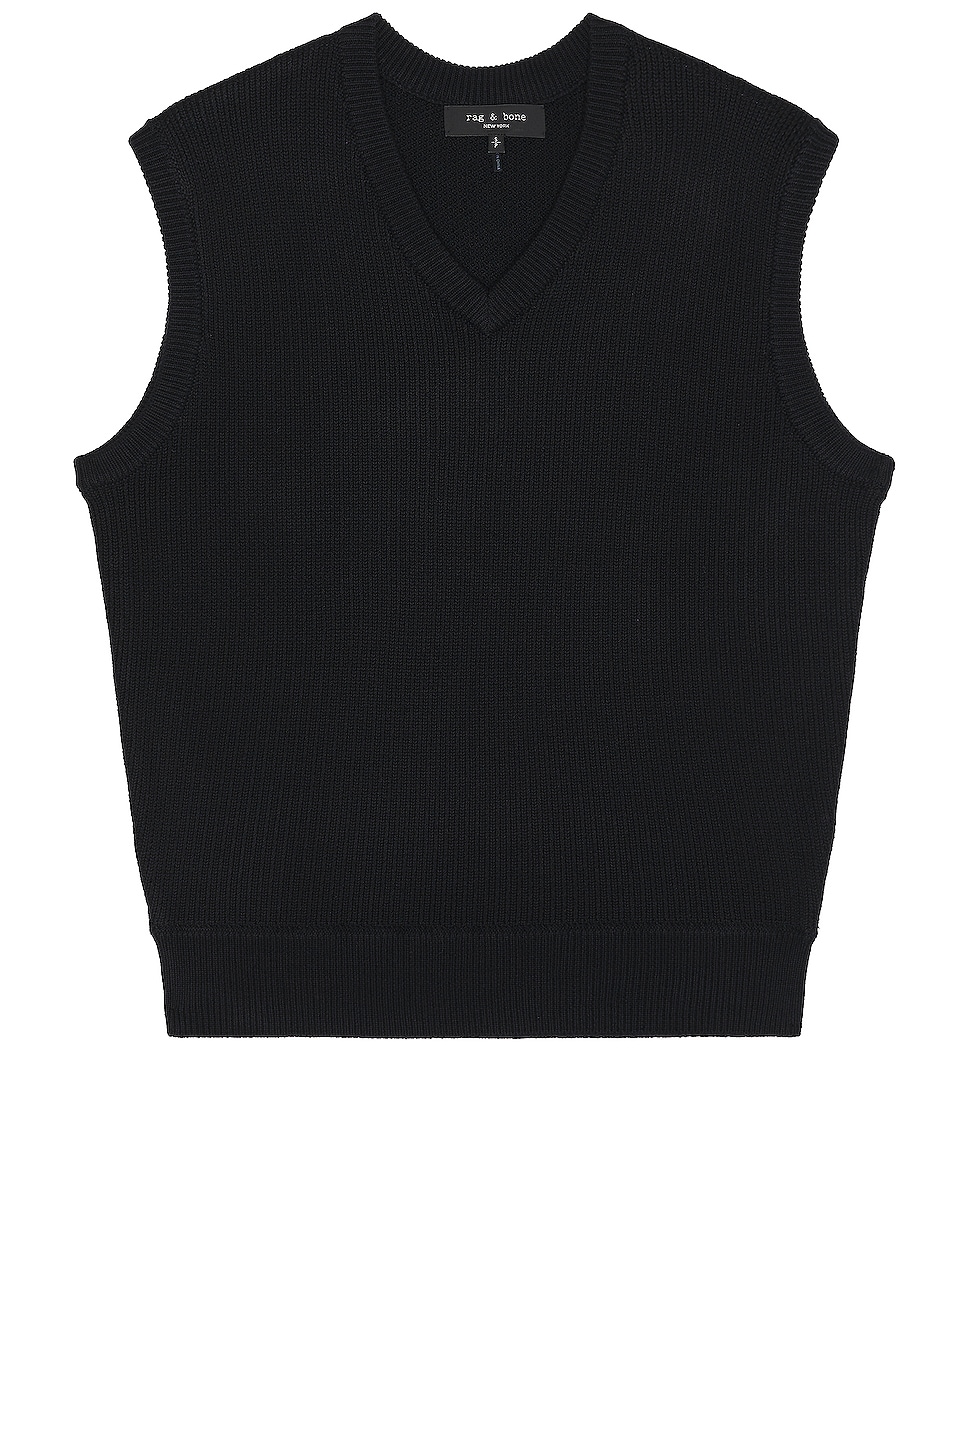 Image 1 of Rag & Bone Harvey Sweater Vest in Black